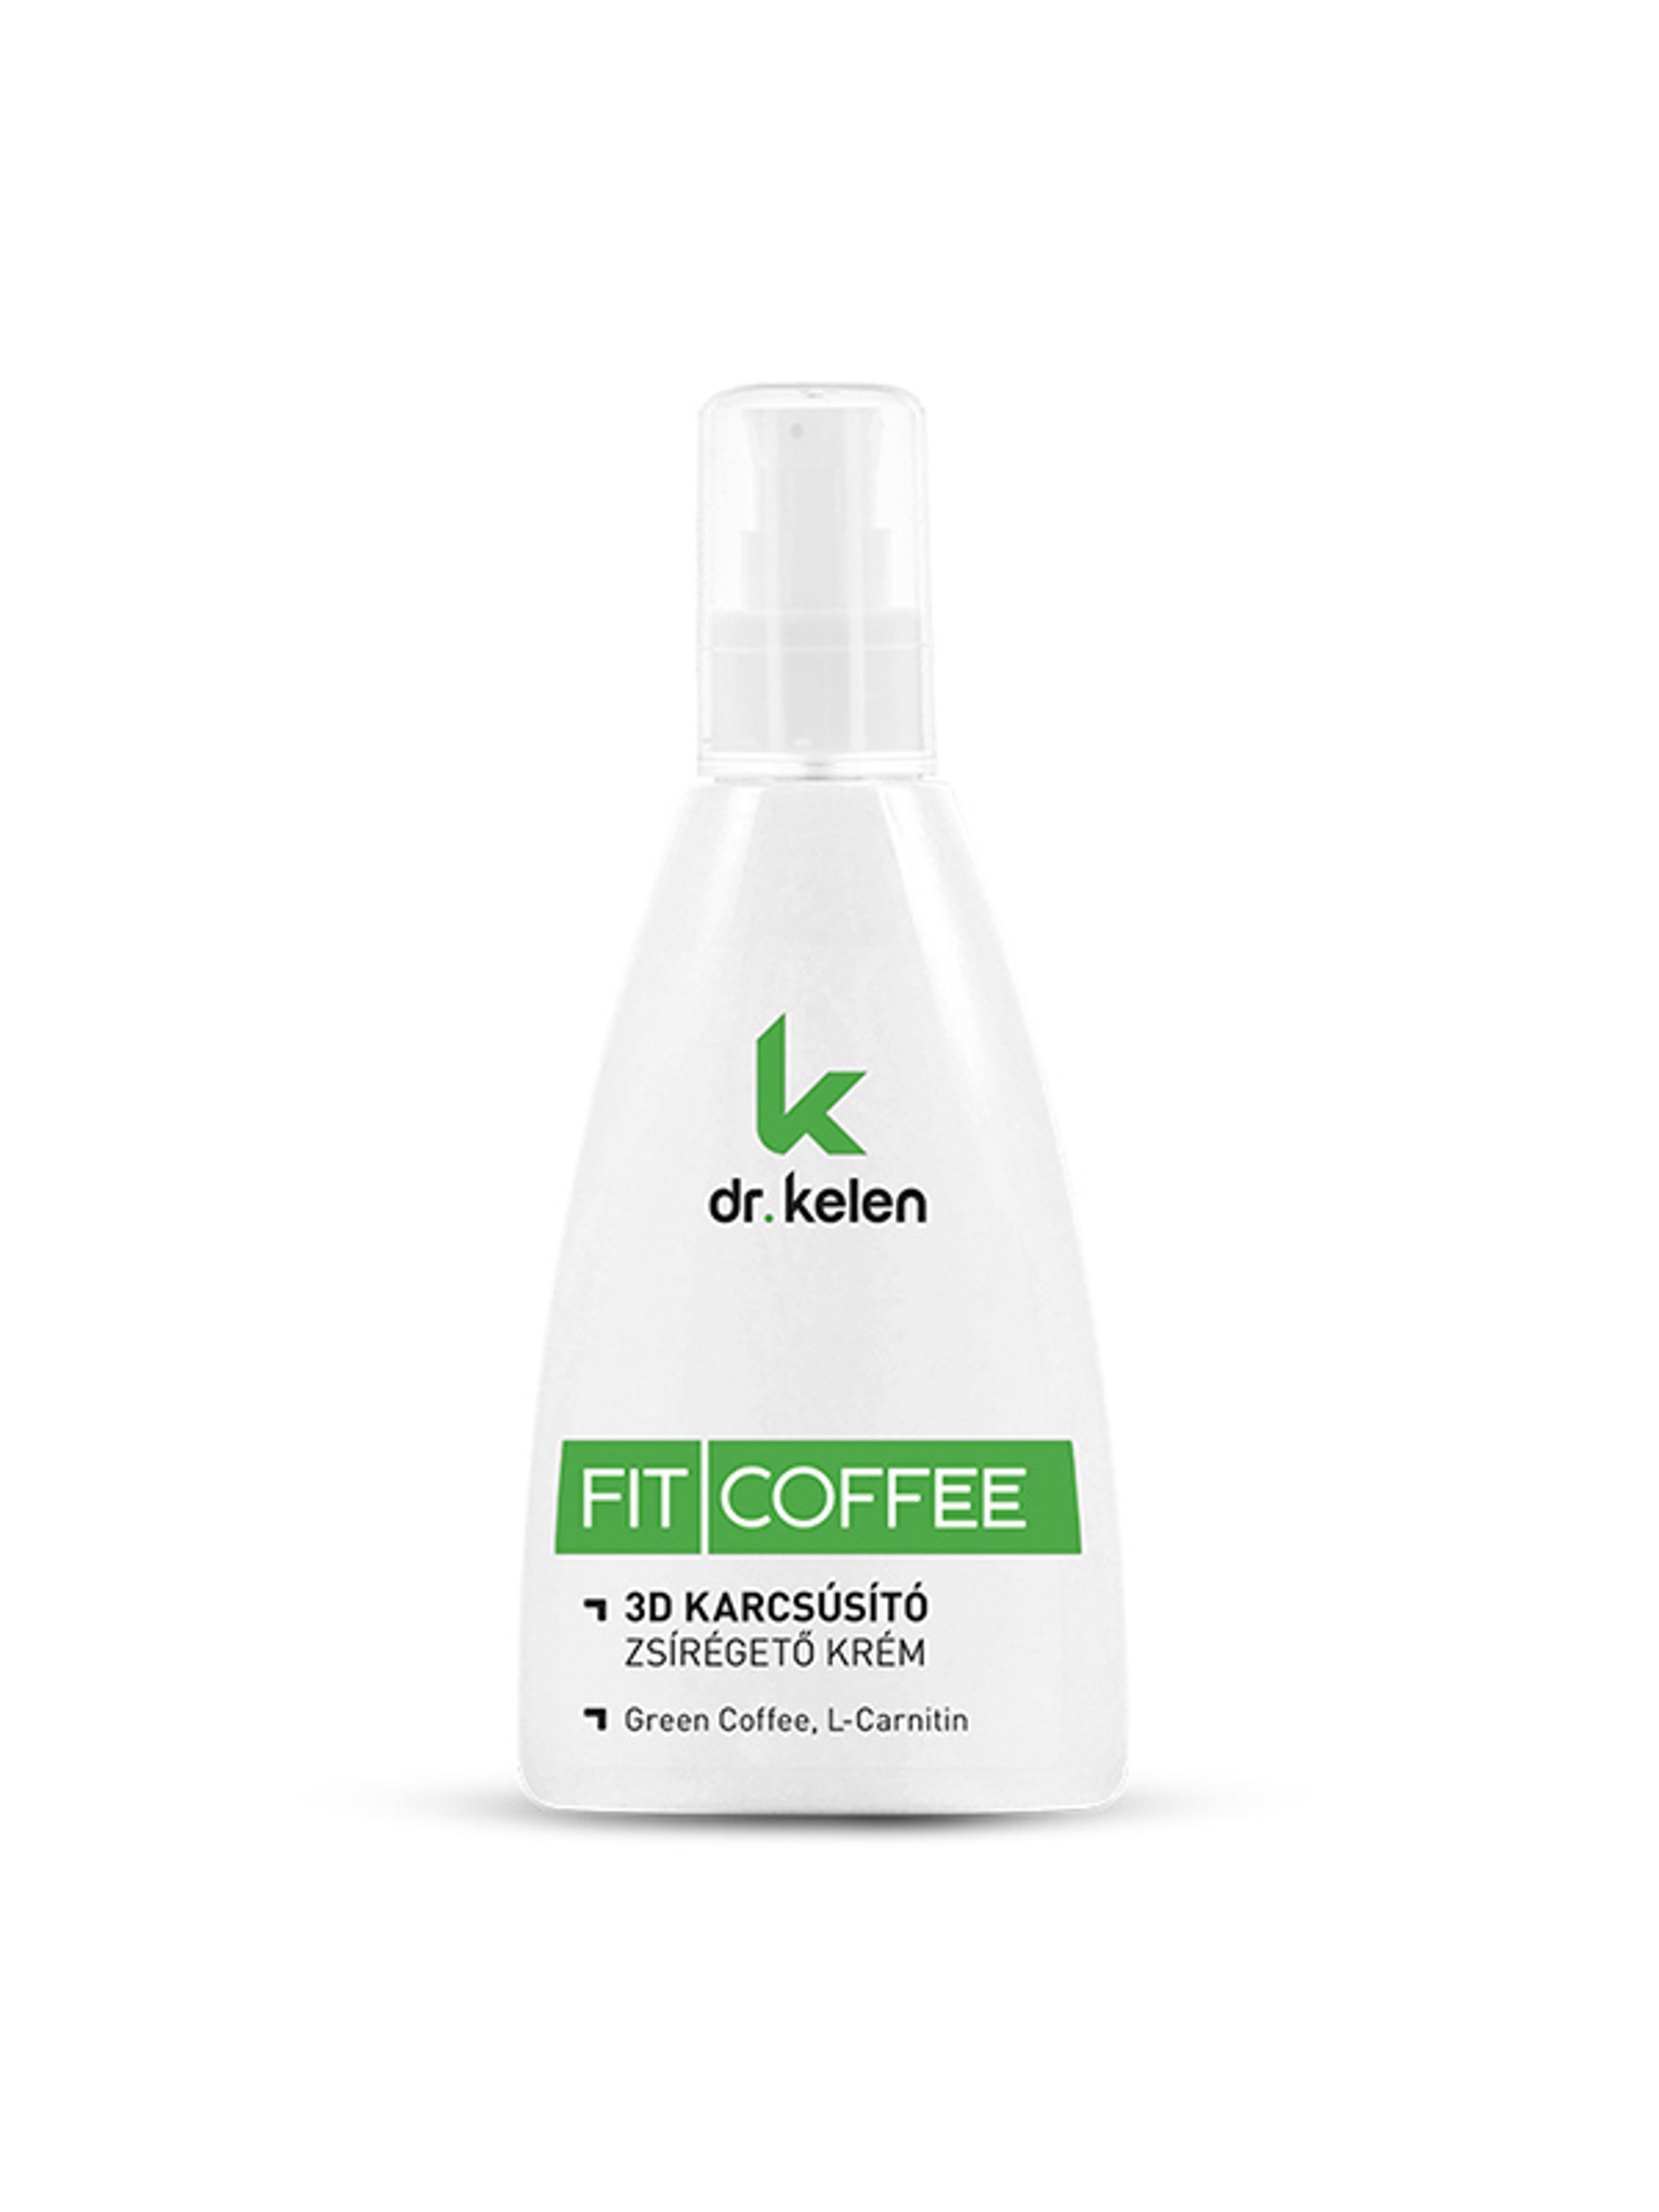 Dr. Kelen Fit Coffee 3D karcsúsító zsírégető testápoló - 150 ml